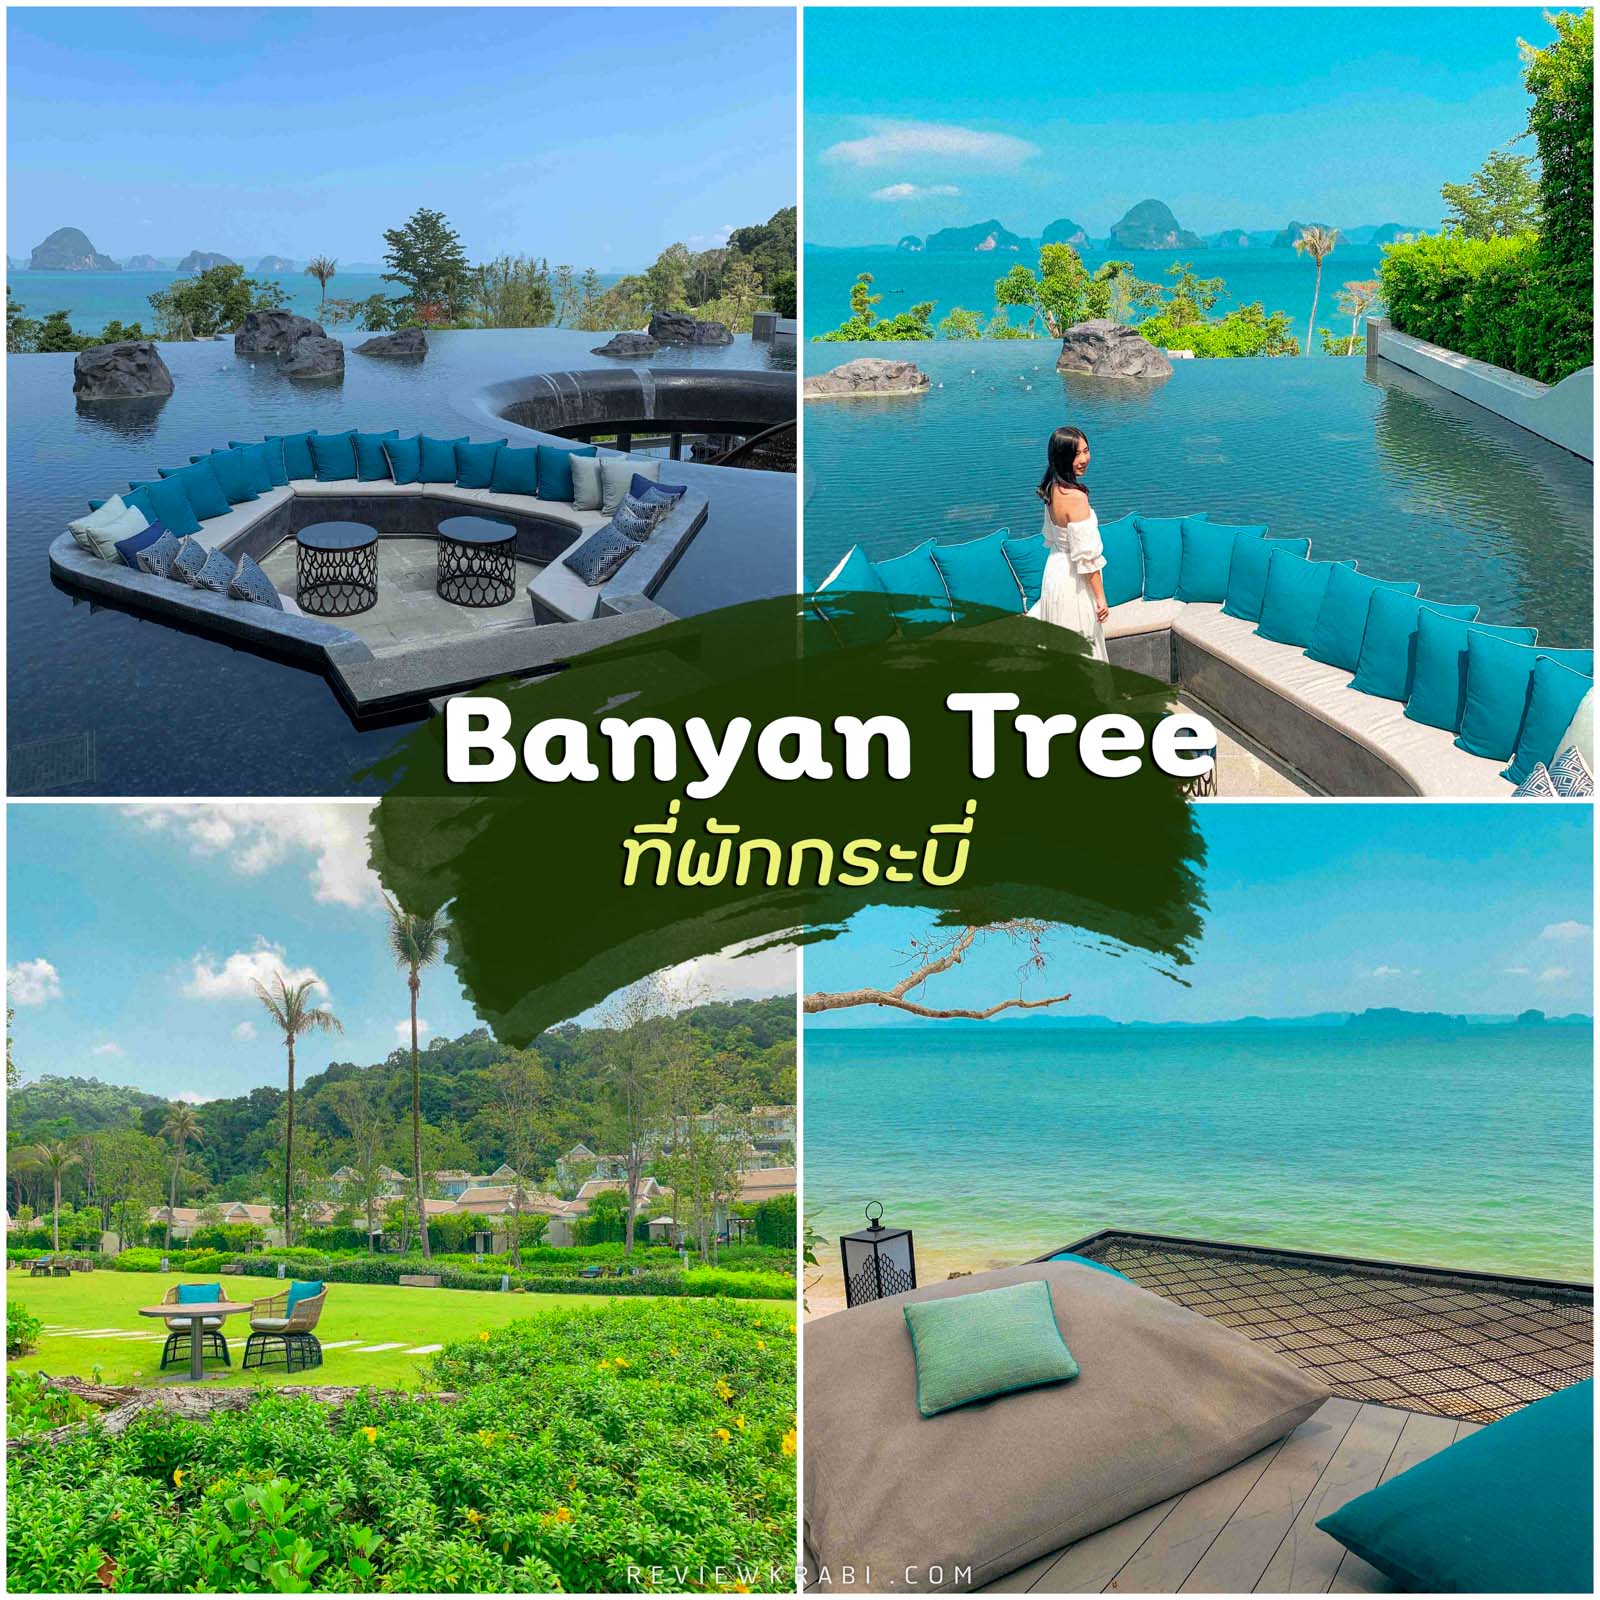 Banyan Tree Krabi ที่พักกระบี่ บันยันทรี วิลล่าสุดหรูริมหาดทับแขก สวยชิววิวหลักล้าน